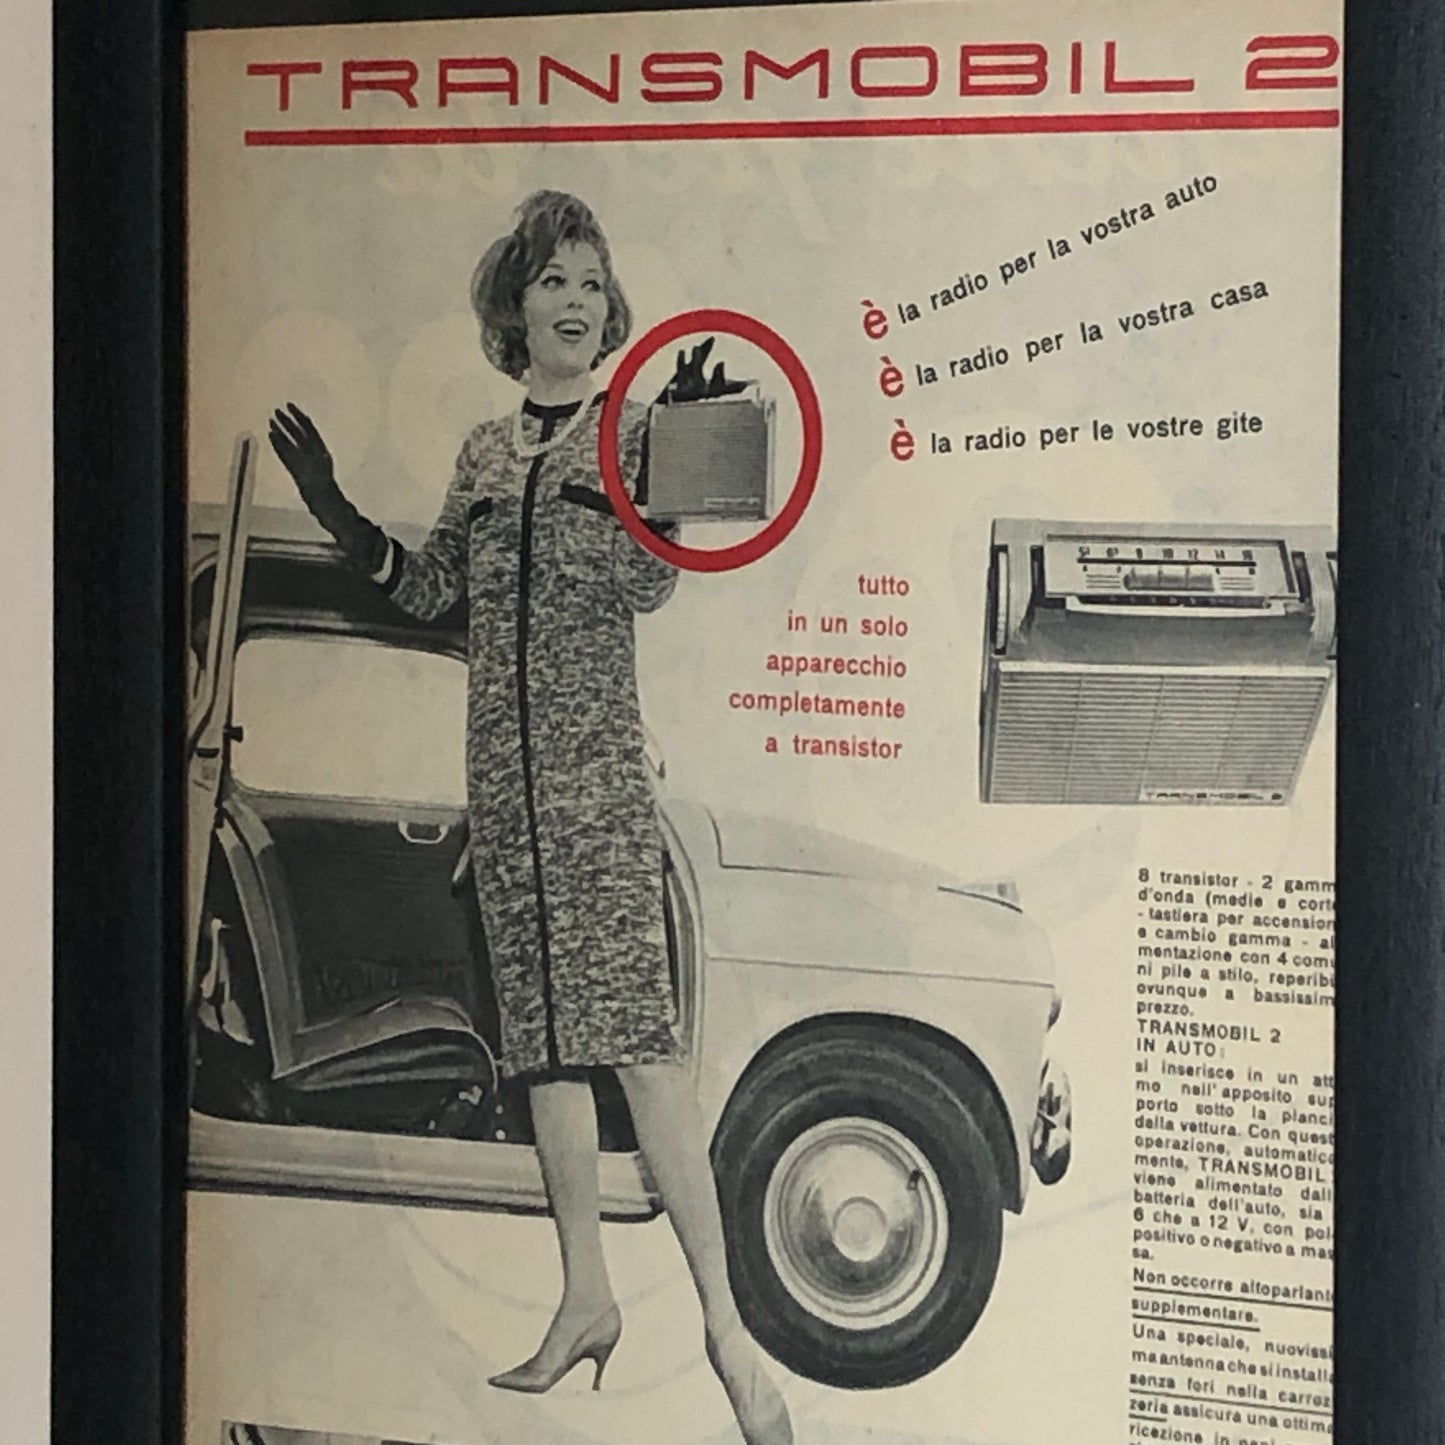 Autovox, Pubblicità Anno 1960 Autovox Transmobil 2